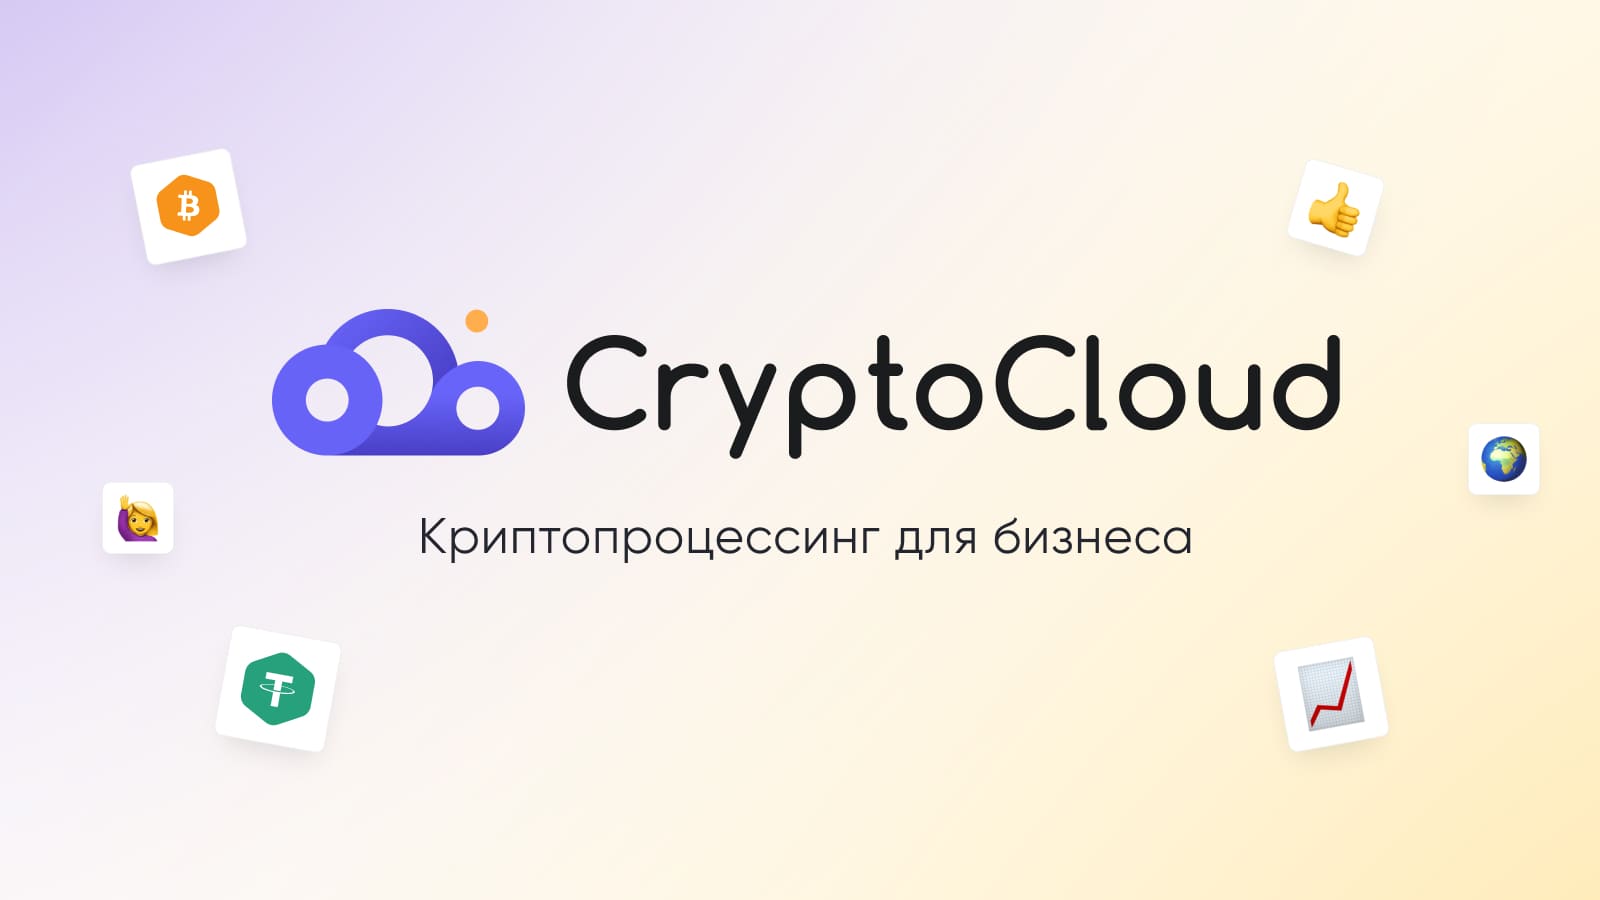  CryptoCloud позволяет принимать оплату криптовалютой в telegram-ботах, на сайтах, в интернет-магазинах и т. д.